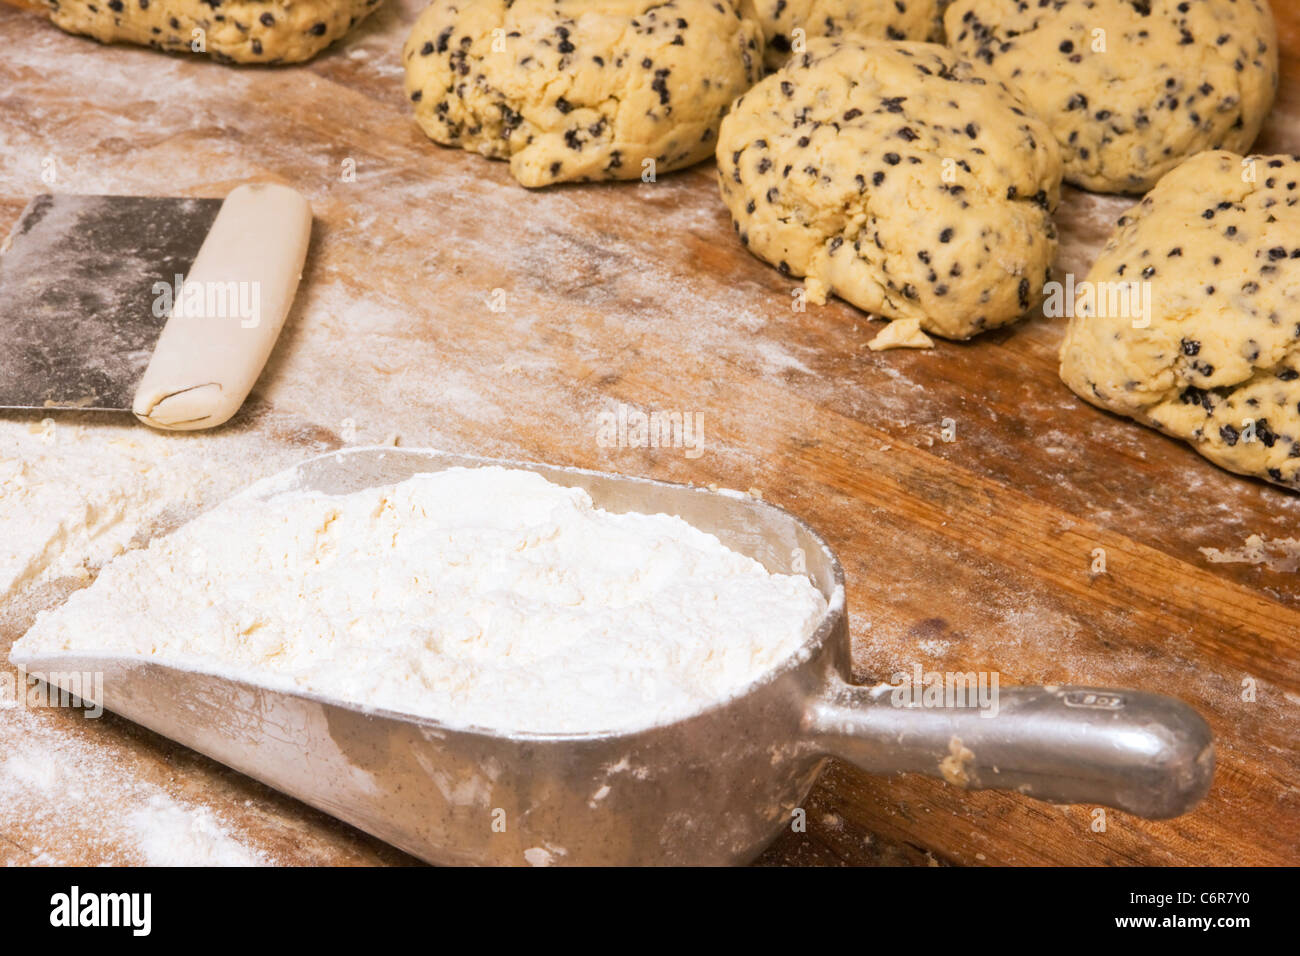 La farine et l'augmentation des boules de pâte de scone, D'Angelo et pâtisserie Pain, Santa Barbara, Californie, États-Unis d'Amérique Banque D'Images